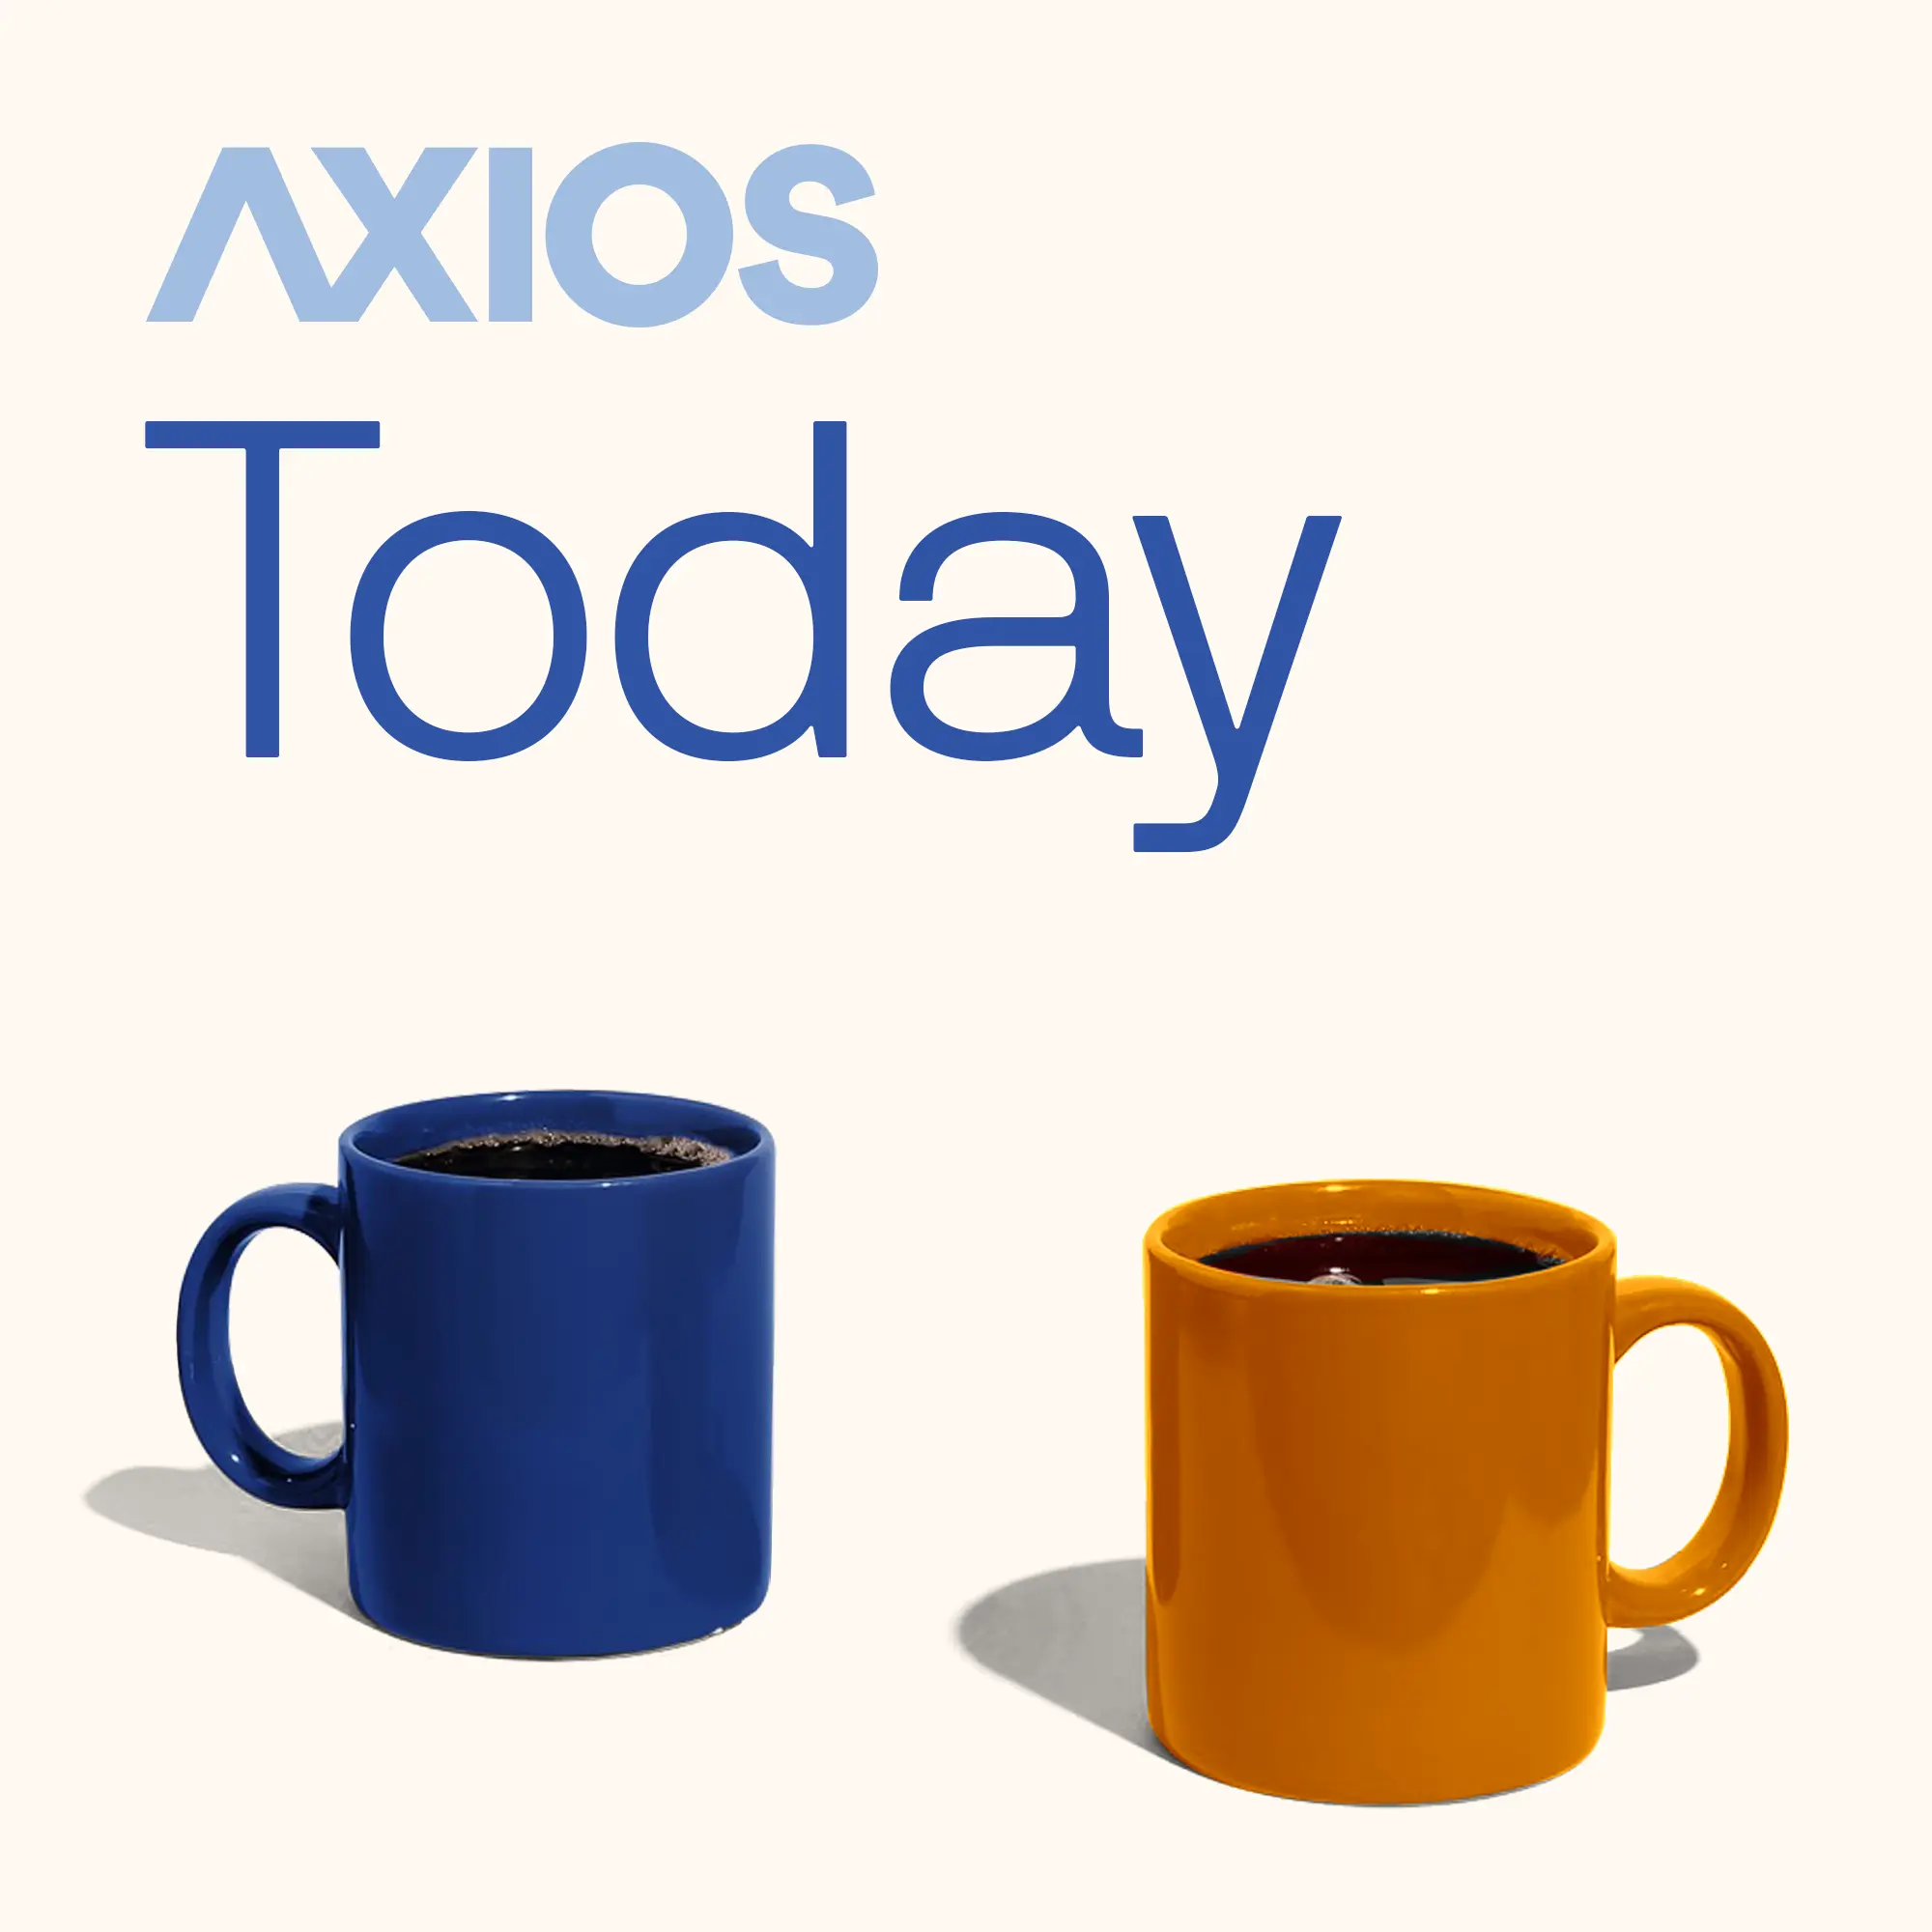 Axios Today